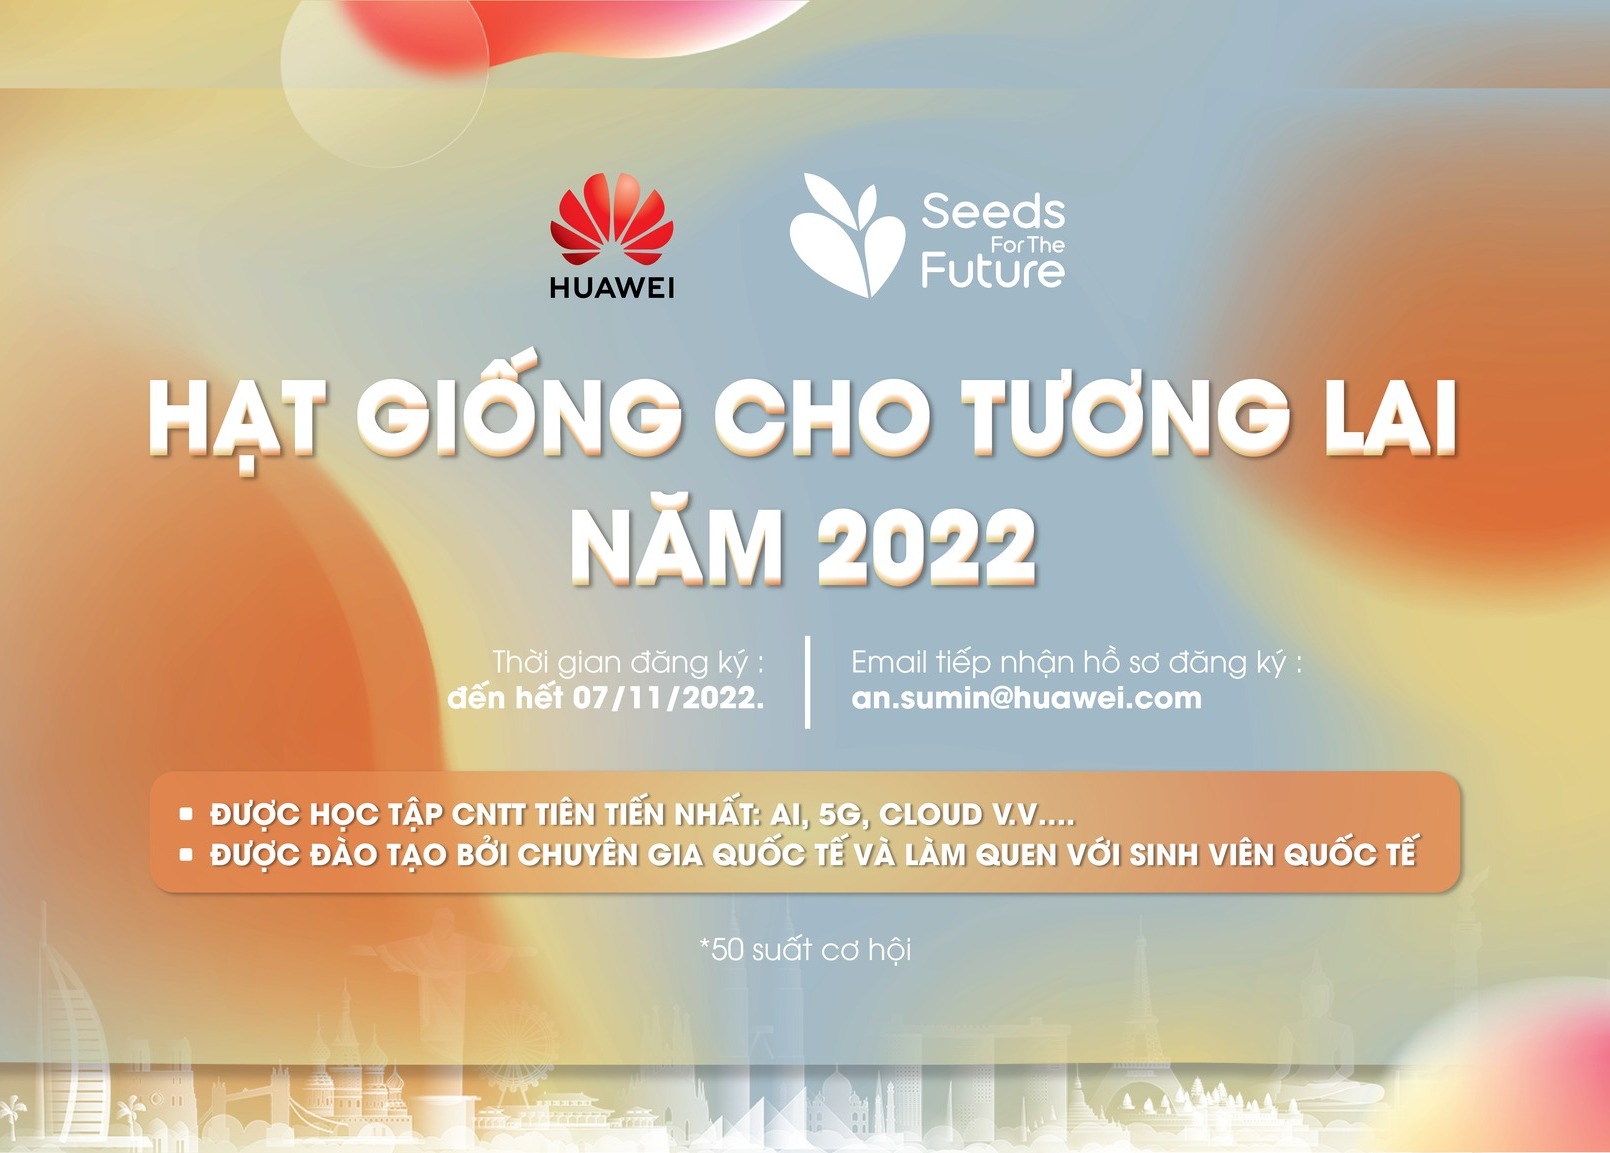 Huawei Việt Nam khởi động chương trình Hạt giống cho Tương lai 2022, trao quyền học tập công nghệ số cho sinh viên Việt Nam